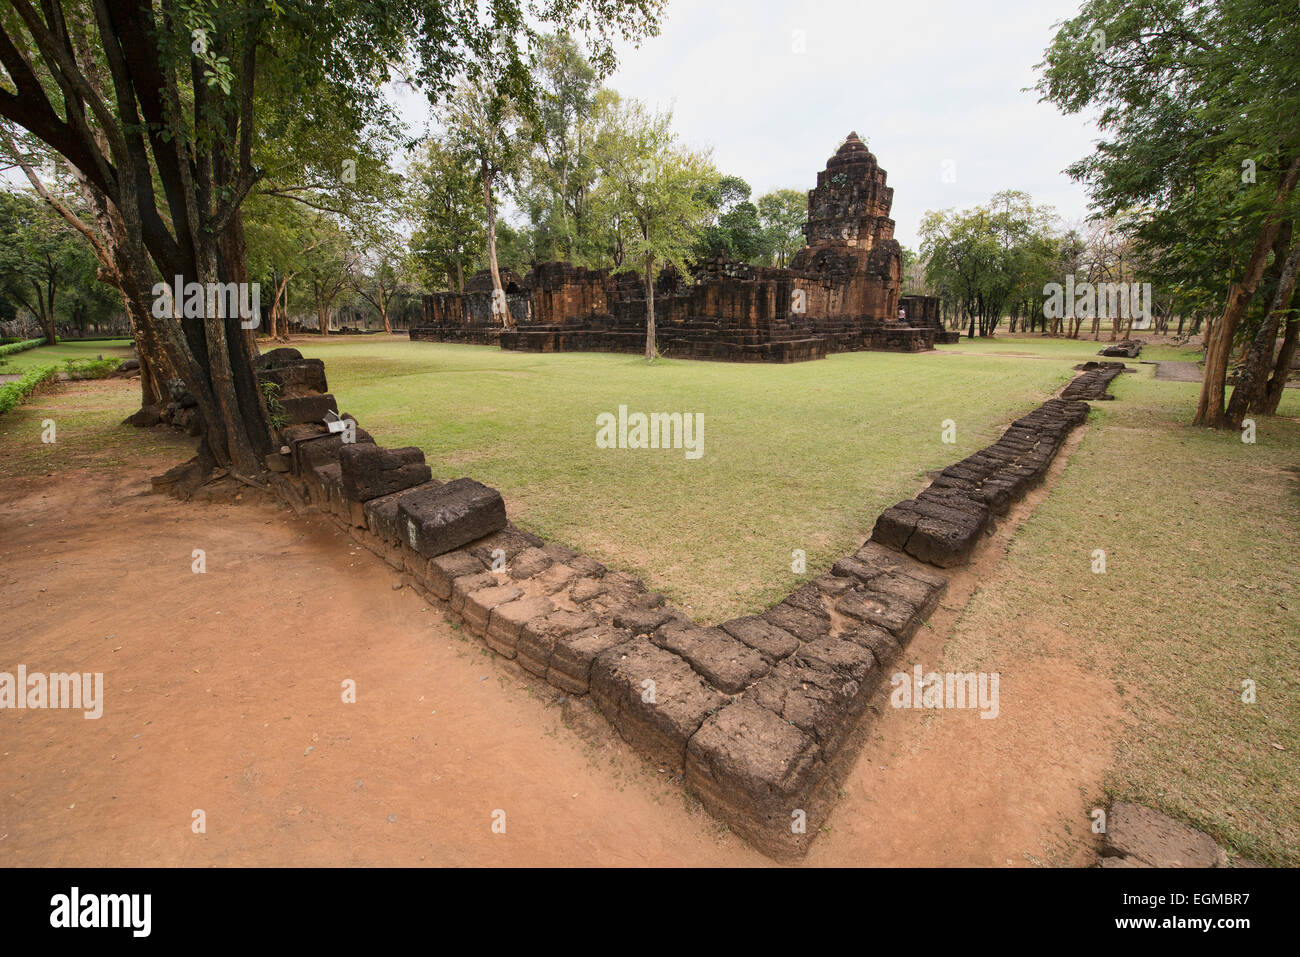 Le temple Khmer ruines à Mueang Sing Historical Park près de Kanchanaburi, Thaïlande Banque D'Images